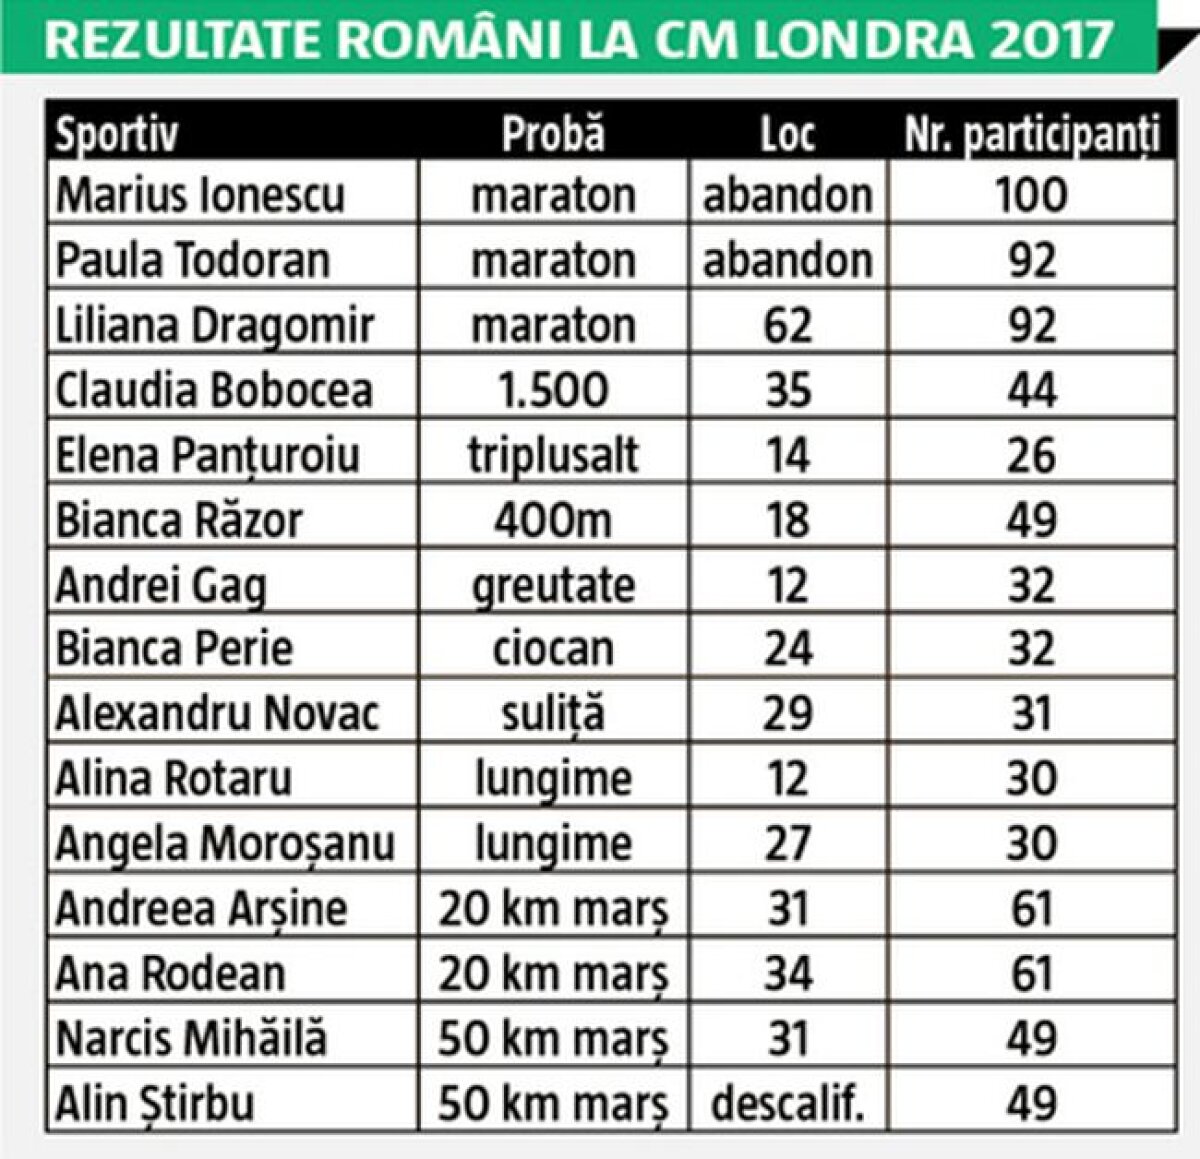 Un fleac, ne-au ciuruit! România a reușit doar două calificări în finale, Alina Rotaru la lungime și Andrei Gag la greutate, ambii clasându-se pe ultimul loc